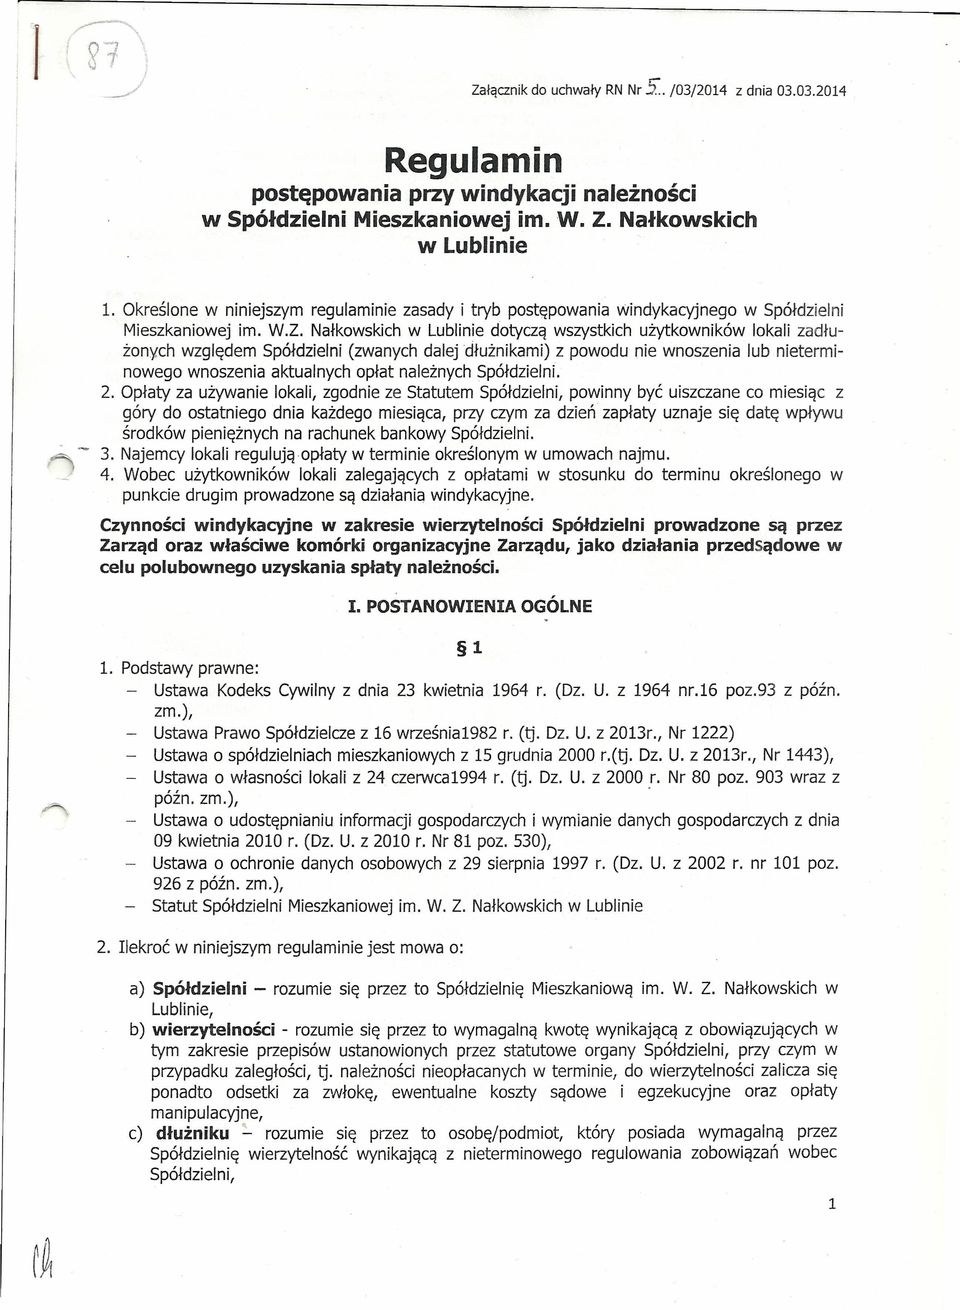 Nałkowskich w Lublinie dotyczą wszystkich użytkowników lokali zadłużonych względem Spółdzielni (zwanych dalej dłużnikami) z powodu nie wnoszenia lub nieterminowego wnoszenia aktualnych opłat